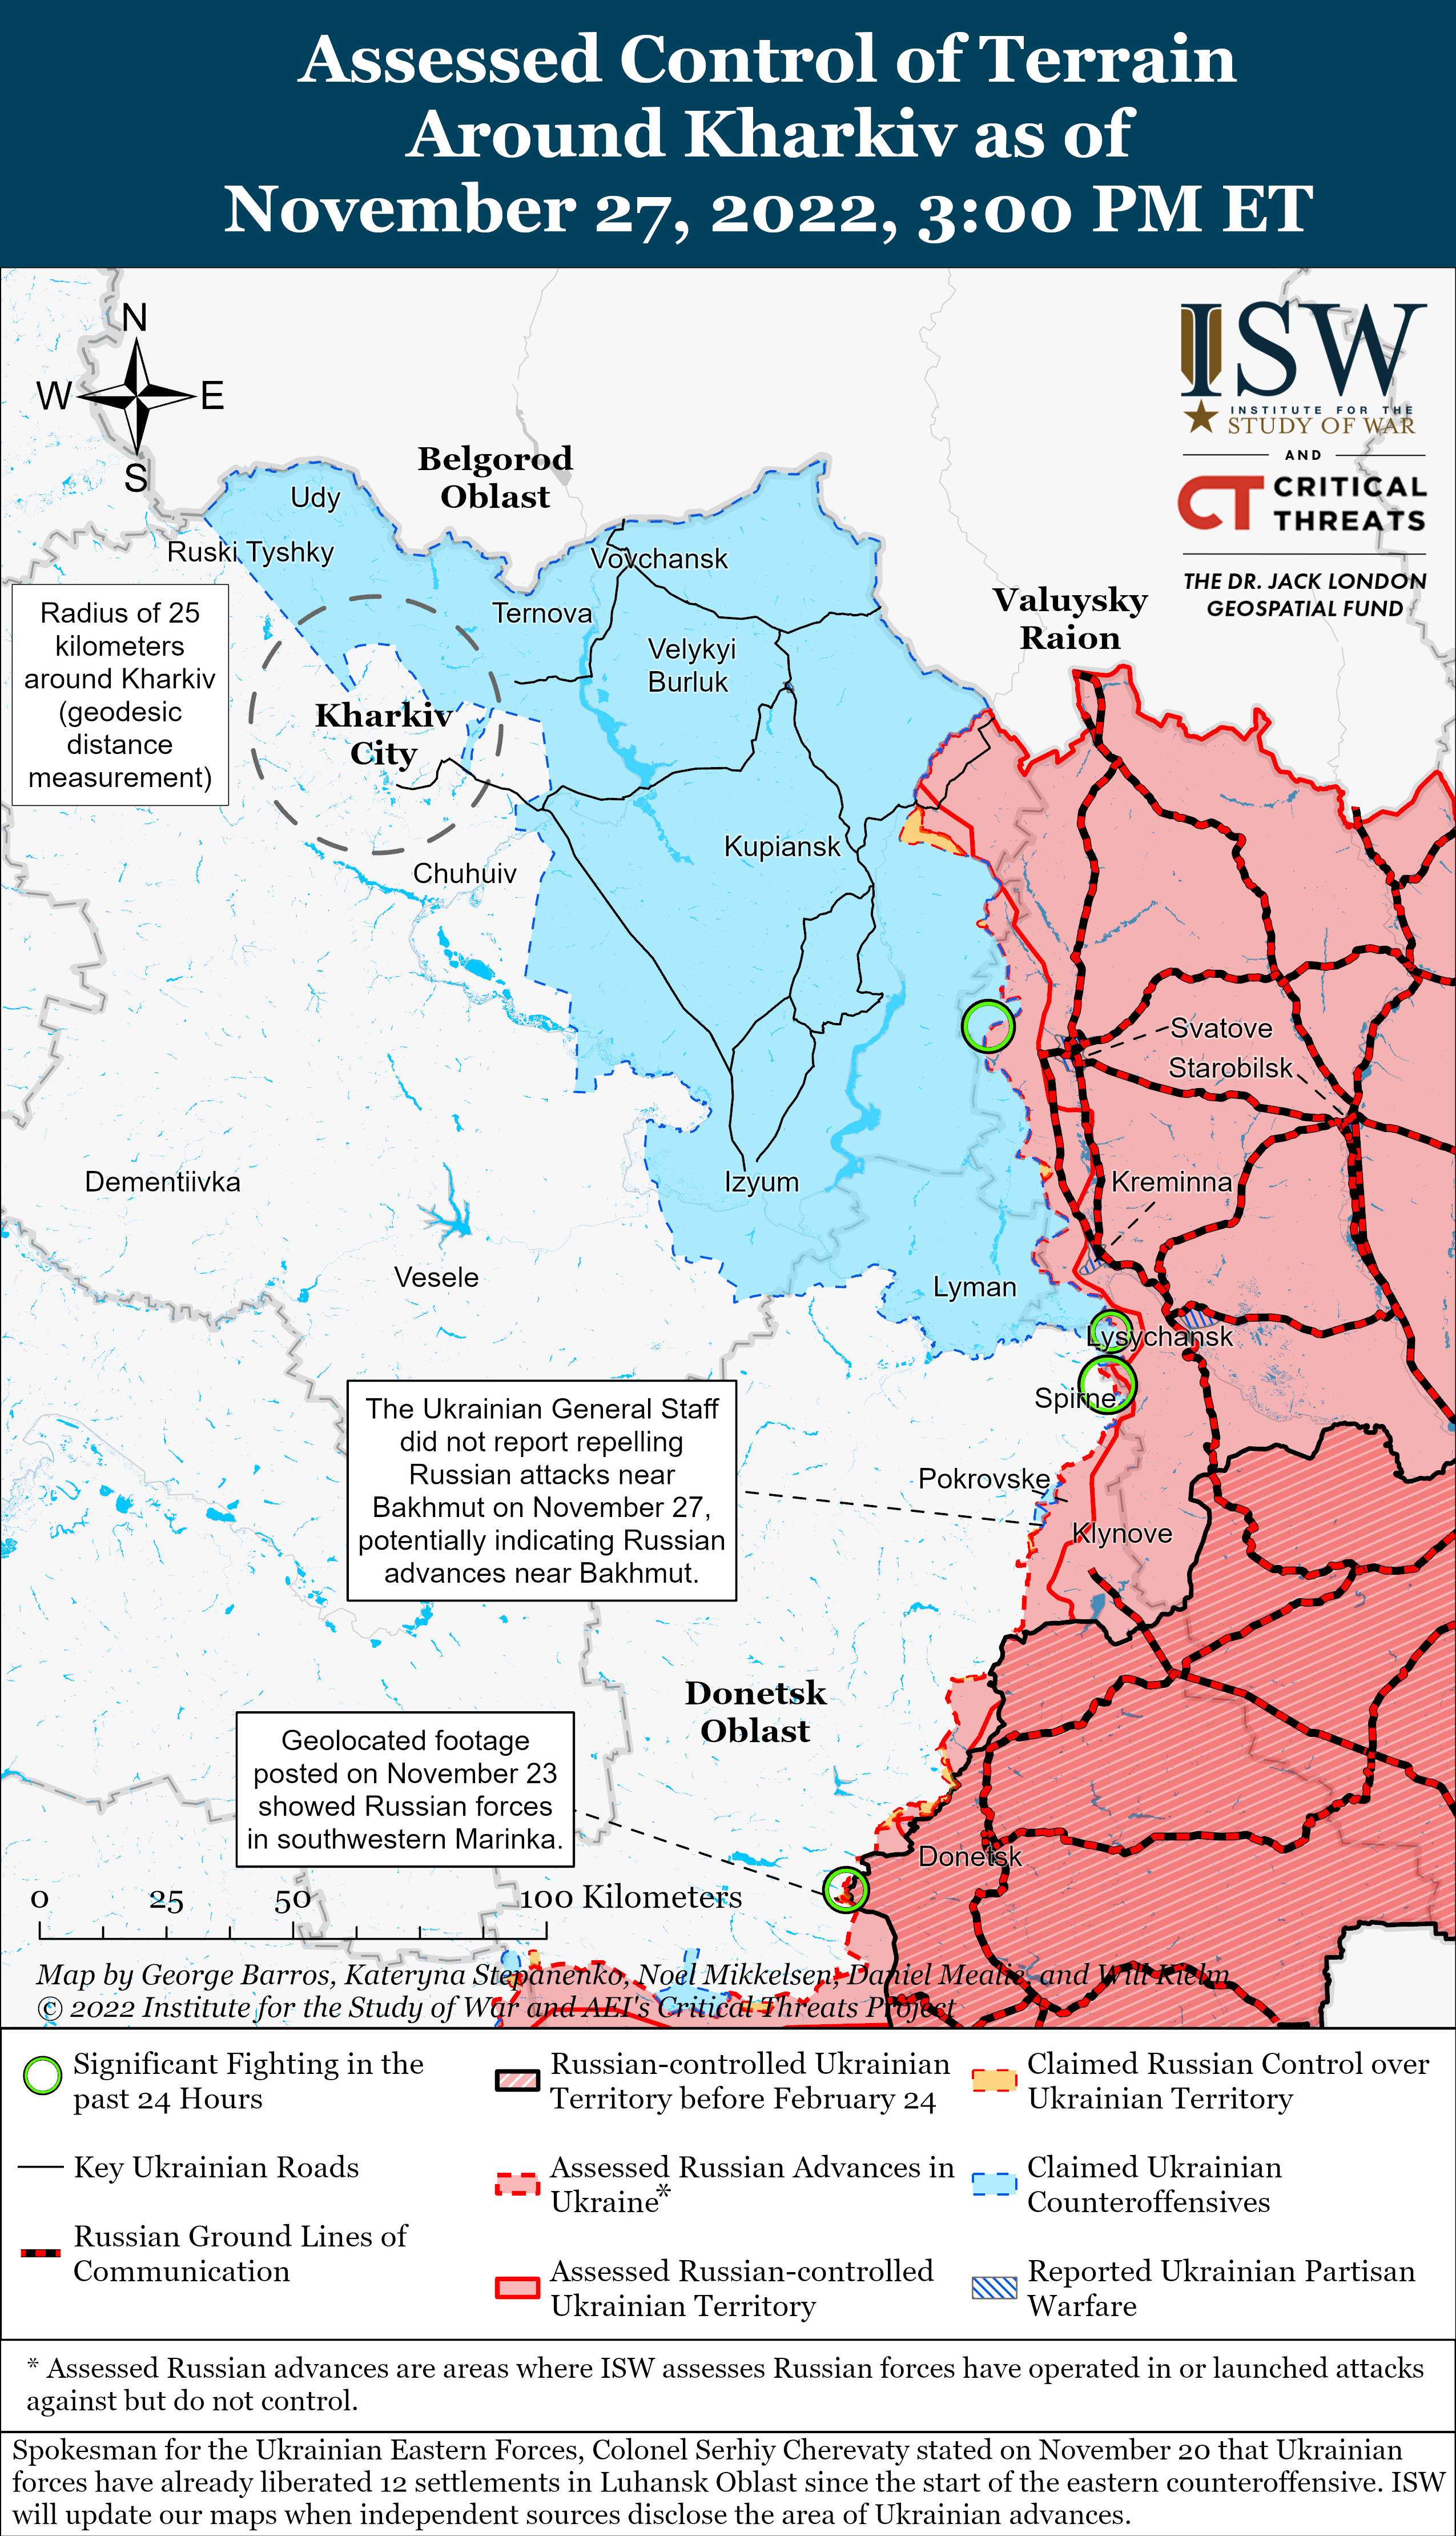 Окупанти не розраховують, що стримають ЗСУ при форсуванні Дніпра: карти боїв